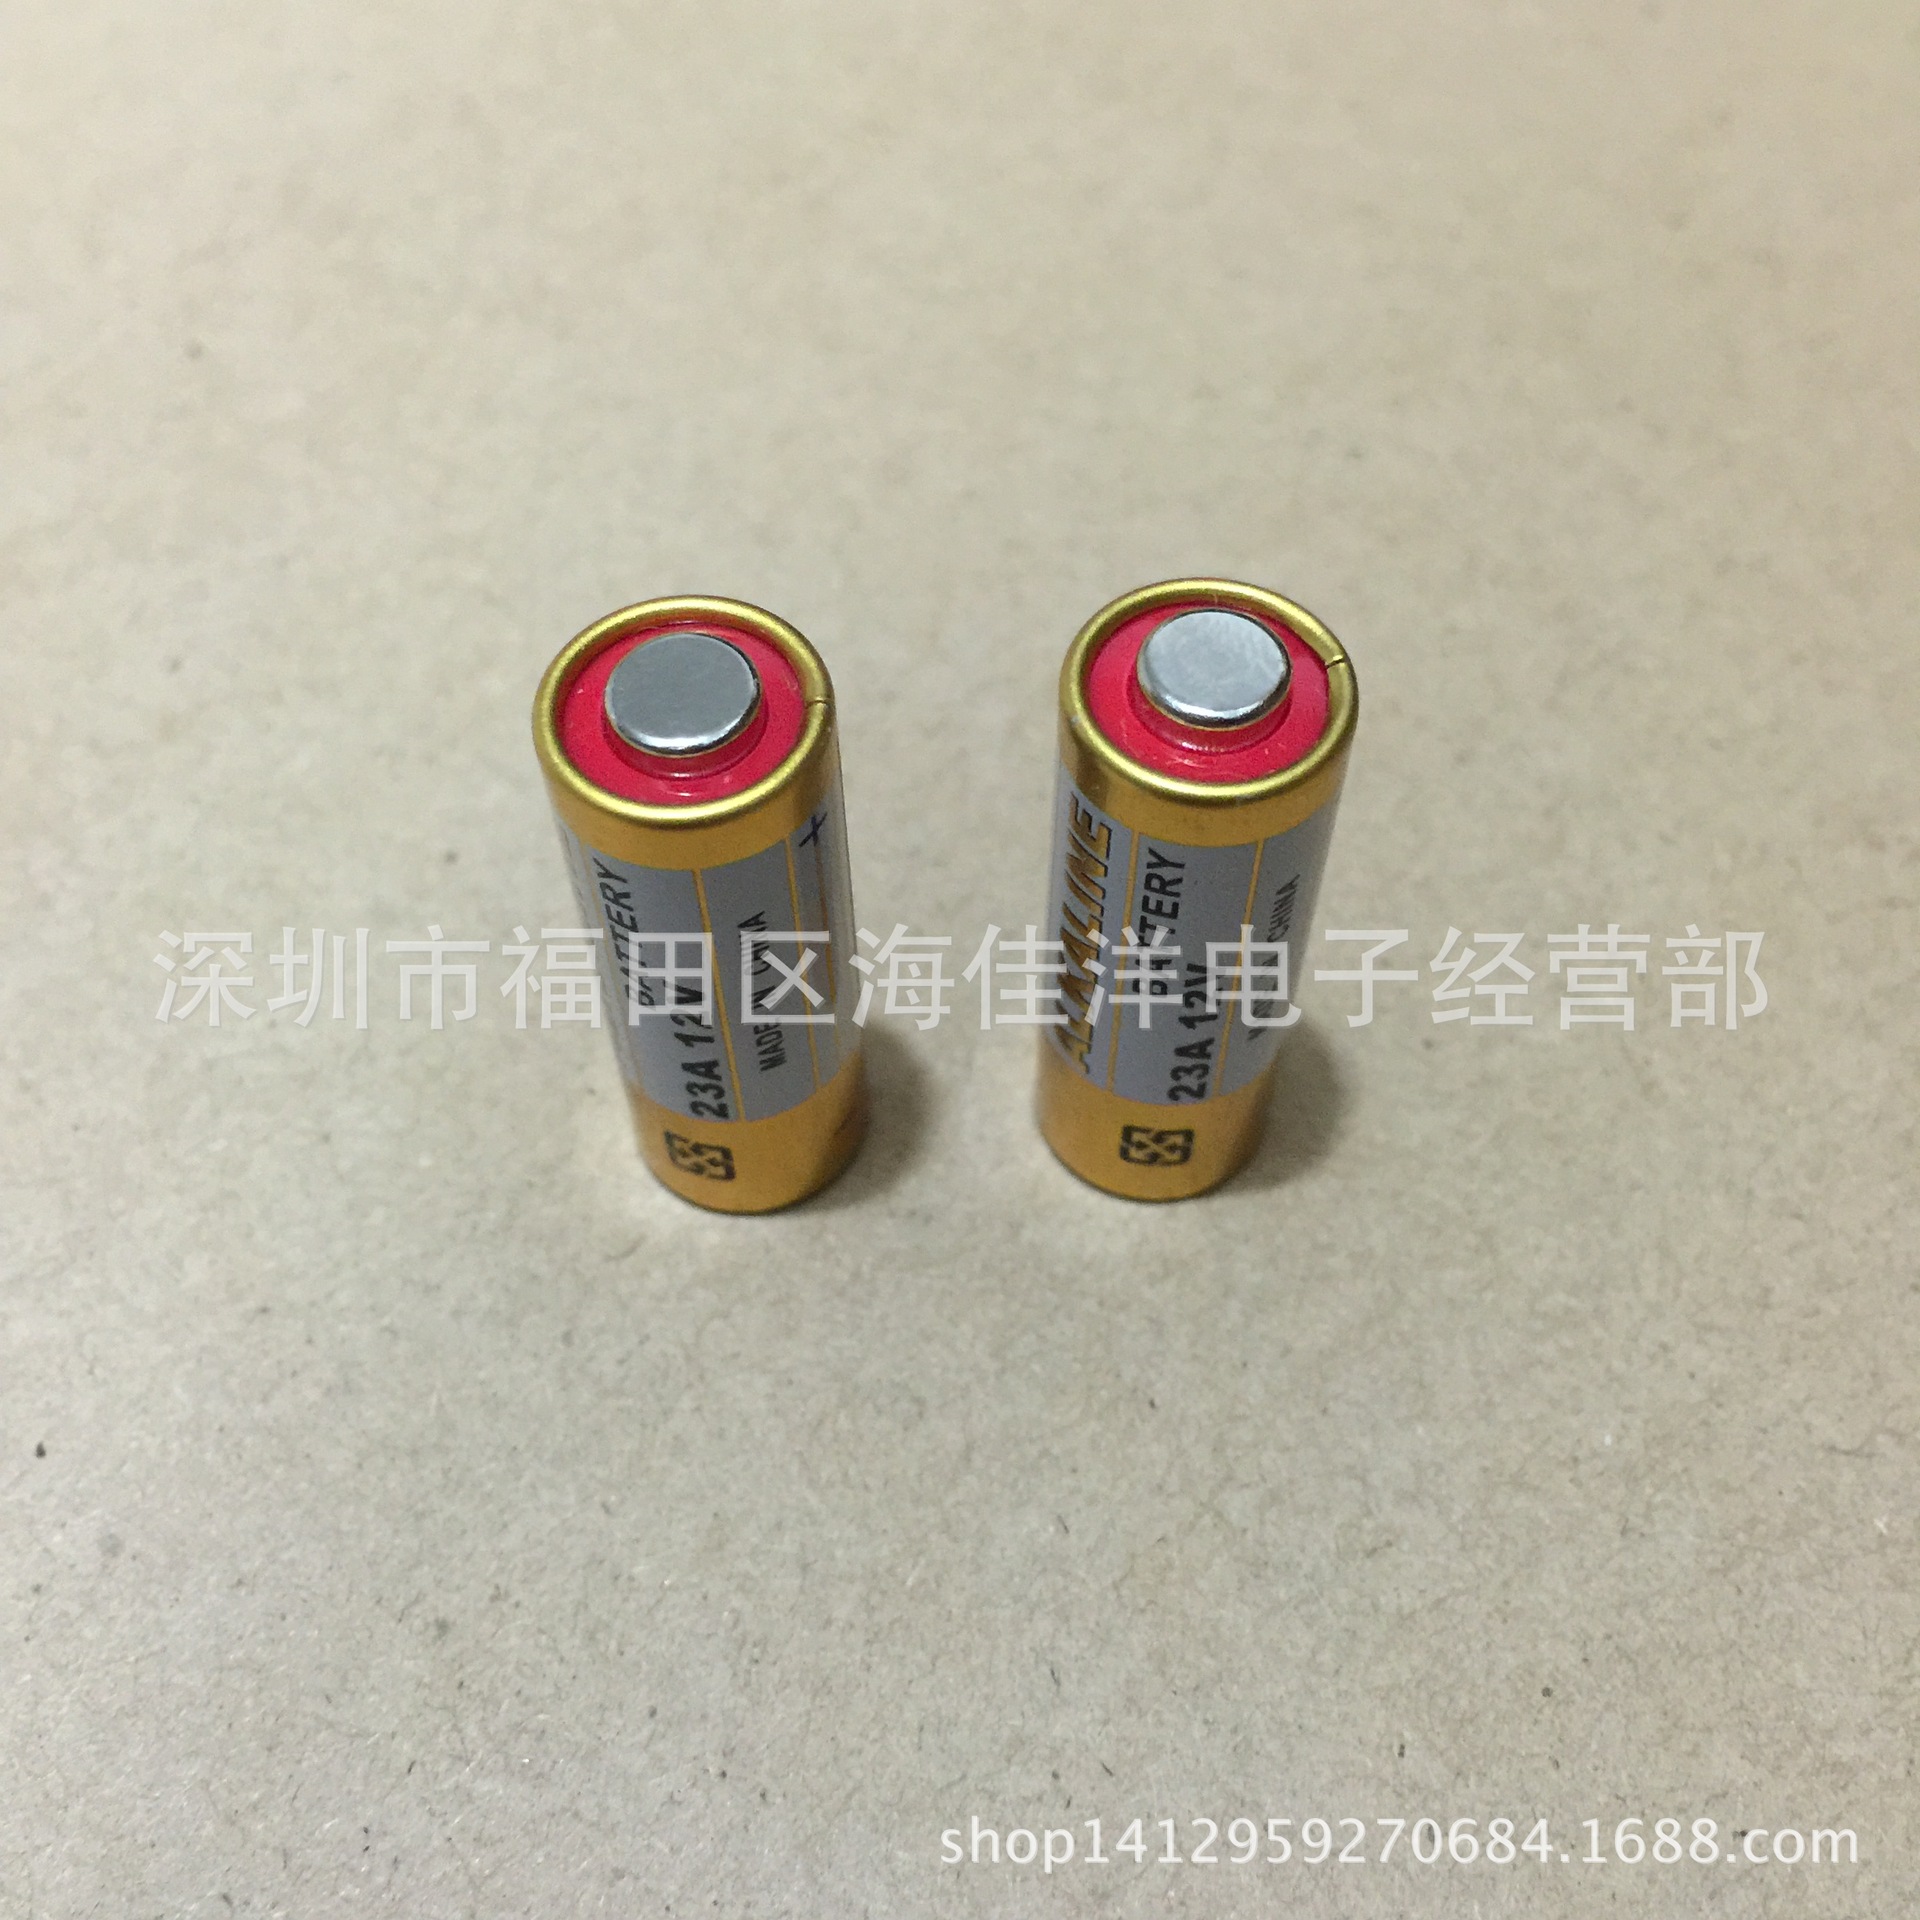 厂家直销 12v23a电池 高压碱性电池L1028、A23、MN23、 LR23A